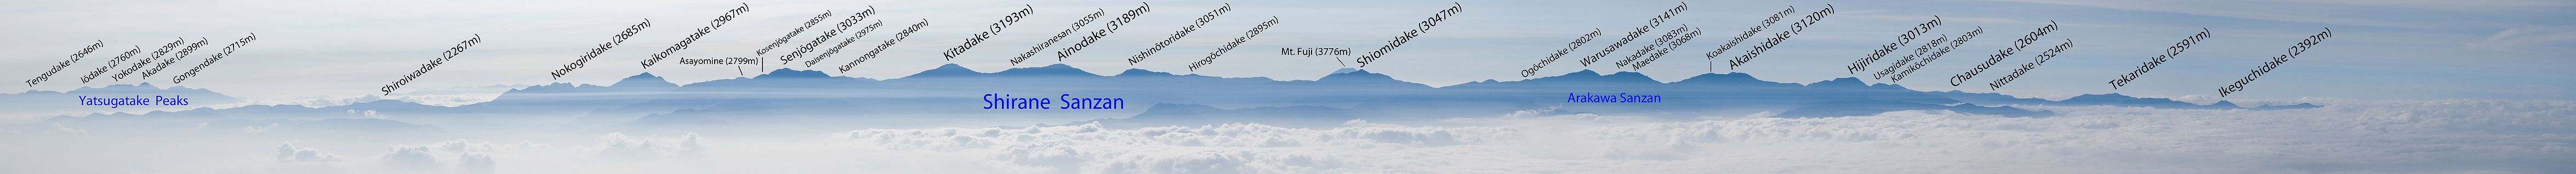 Mts.Akaishi from Mt.Utsugidake 01 en.jpg